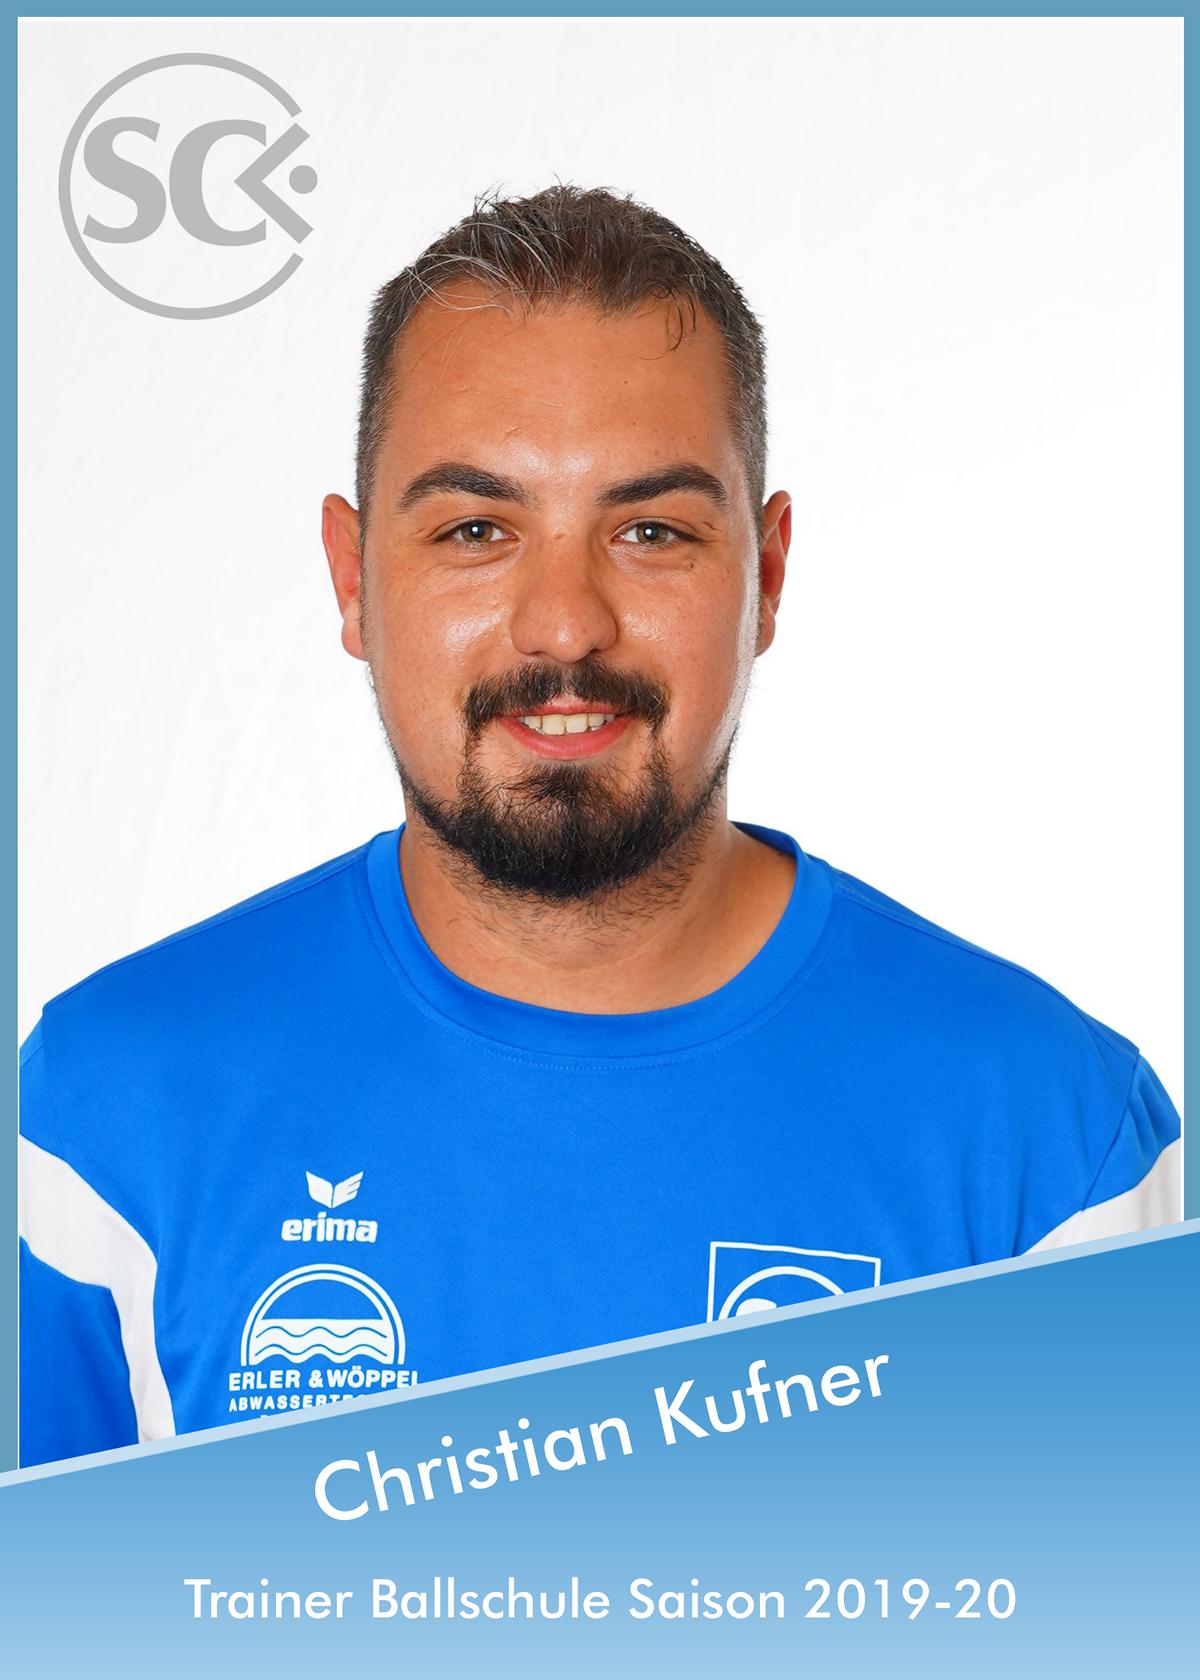 Cristian Kufner